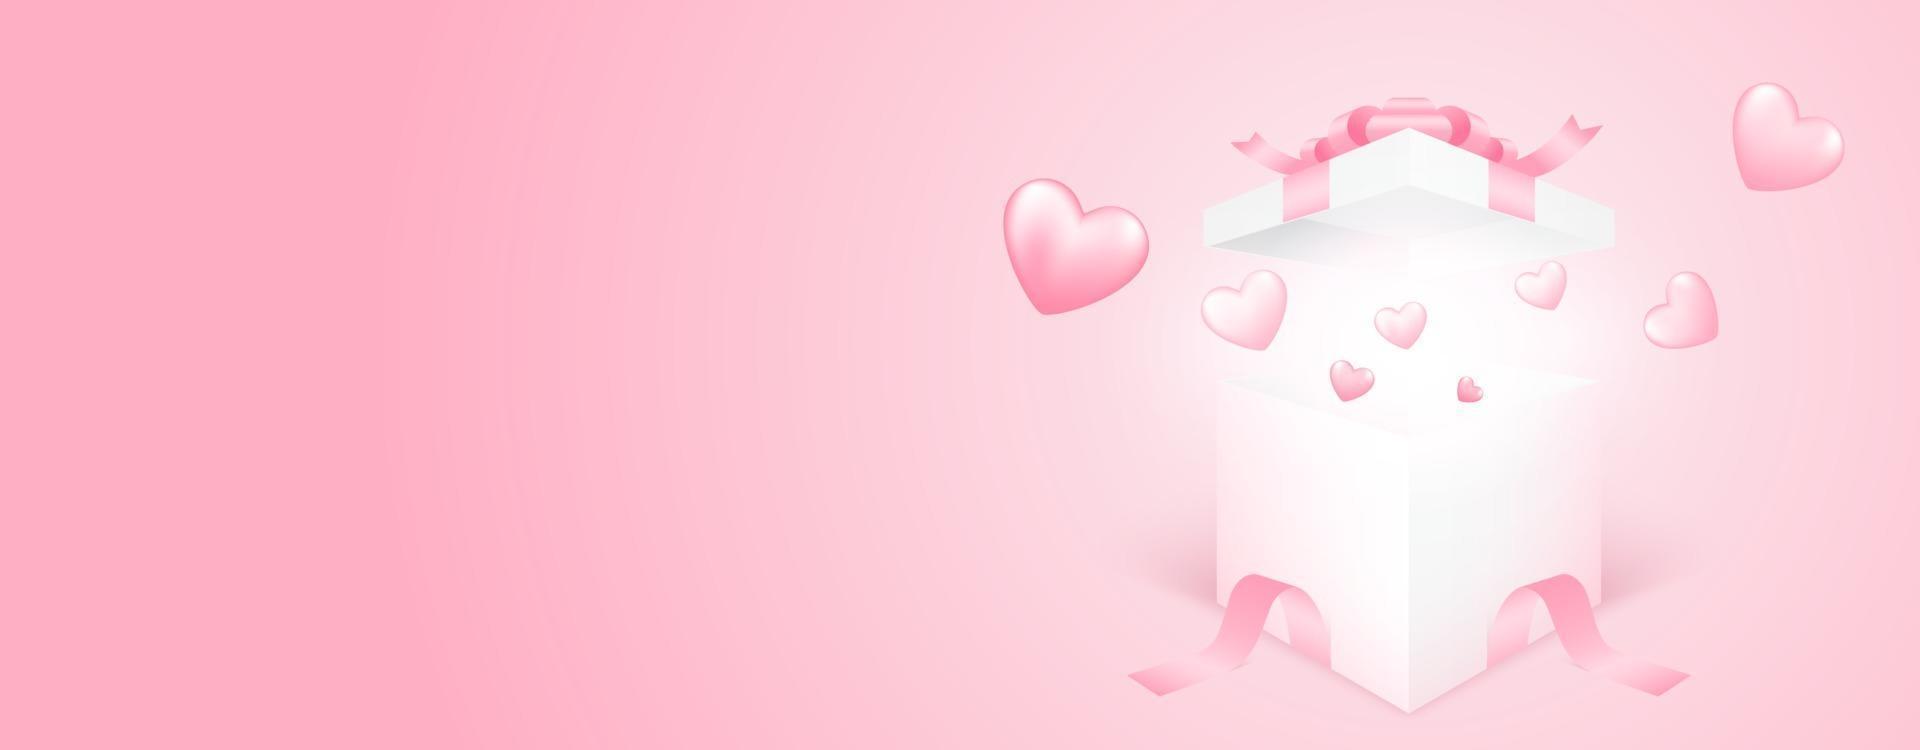 3d Geschenkbox mit Herz, das auf rosa Fahnenhintergrund fliegt. Liebeskonzeptentwurf für glücklichen Muttertag, Valentinstag, Geburtstag. Papierkunstillustration. vektor